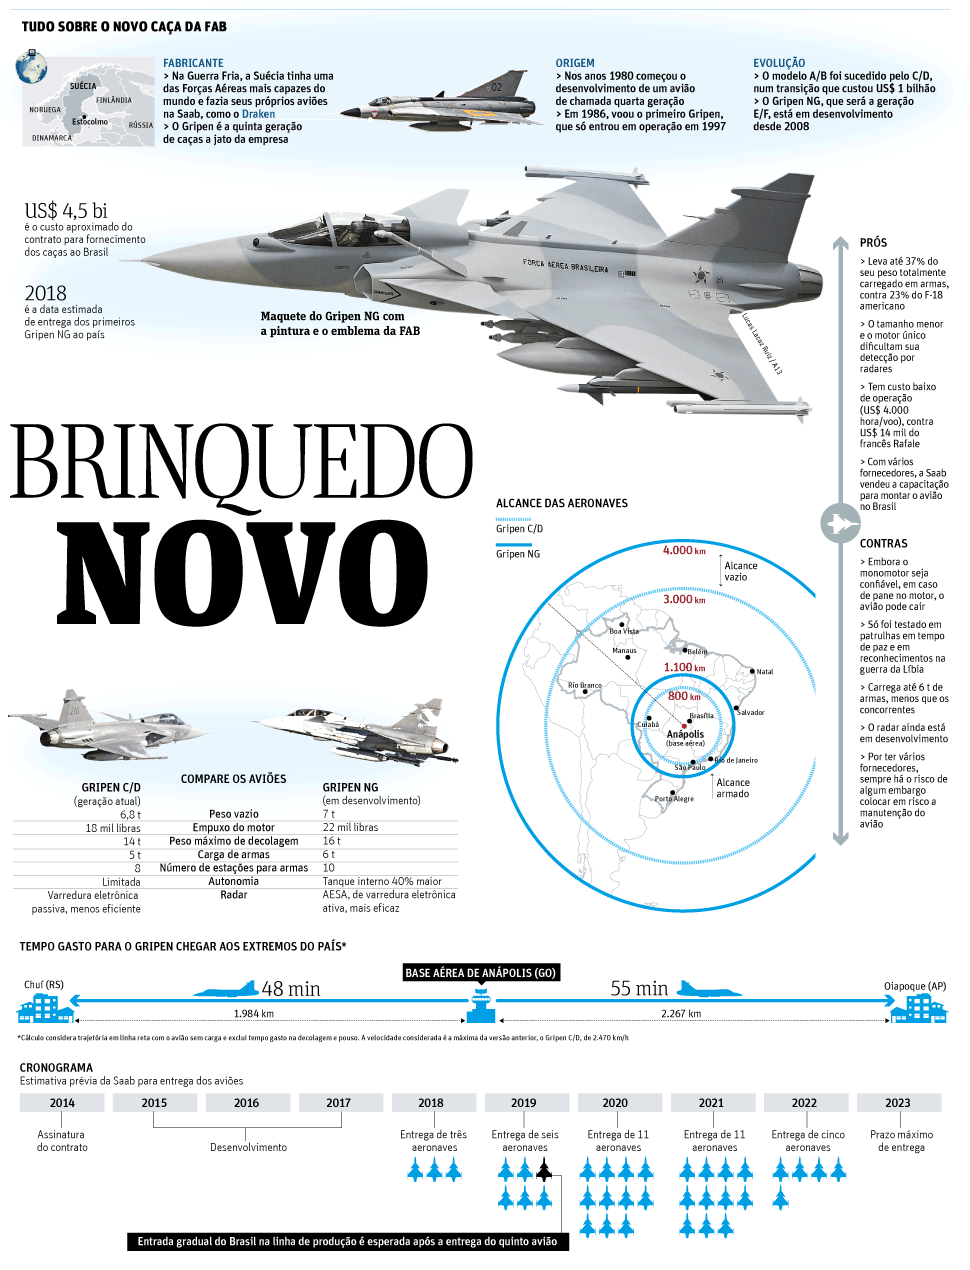 Saab Gripen NG ganador del concurso FX-2 brasileño - Página 21 Unnamed1